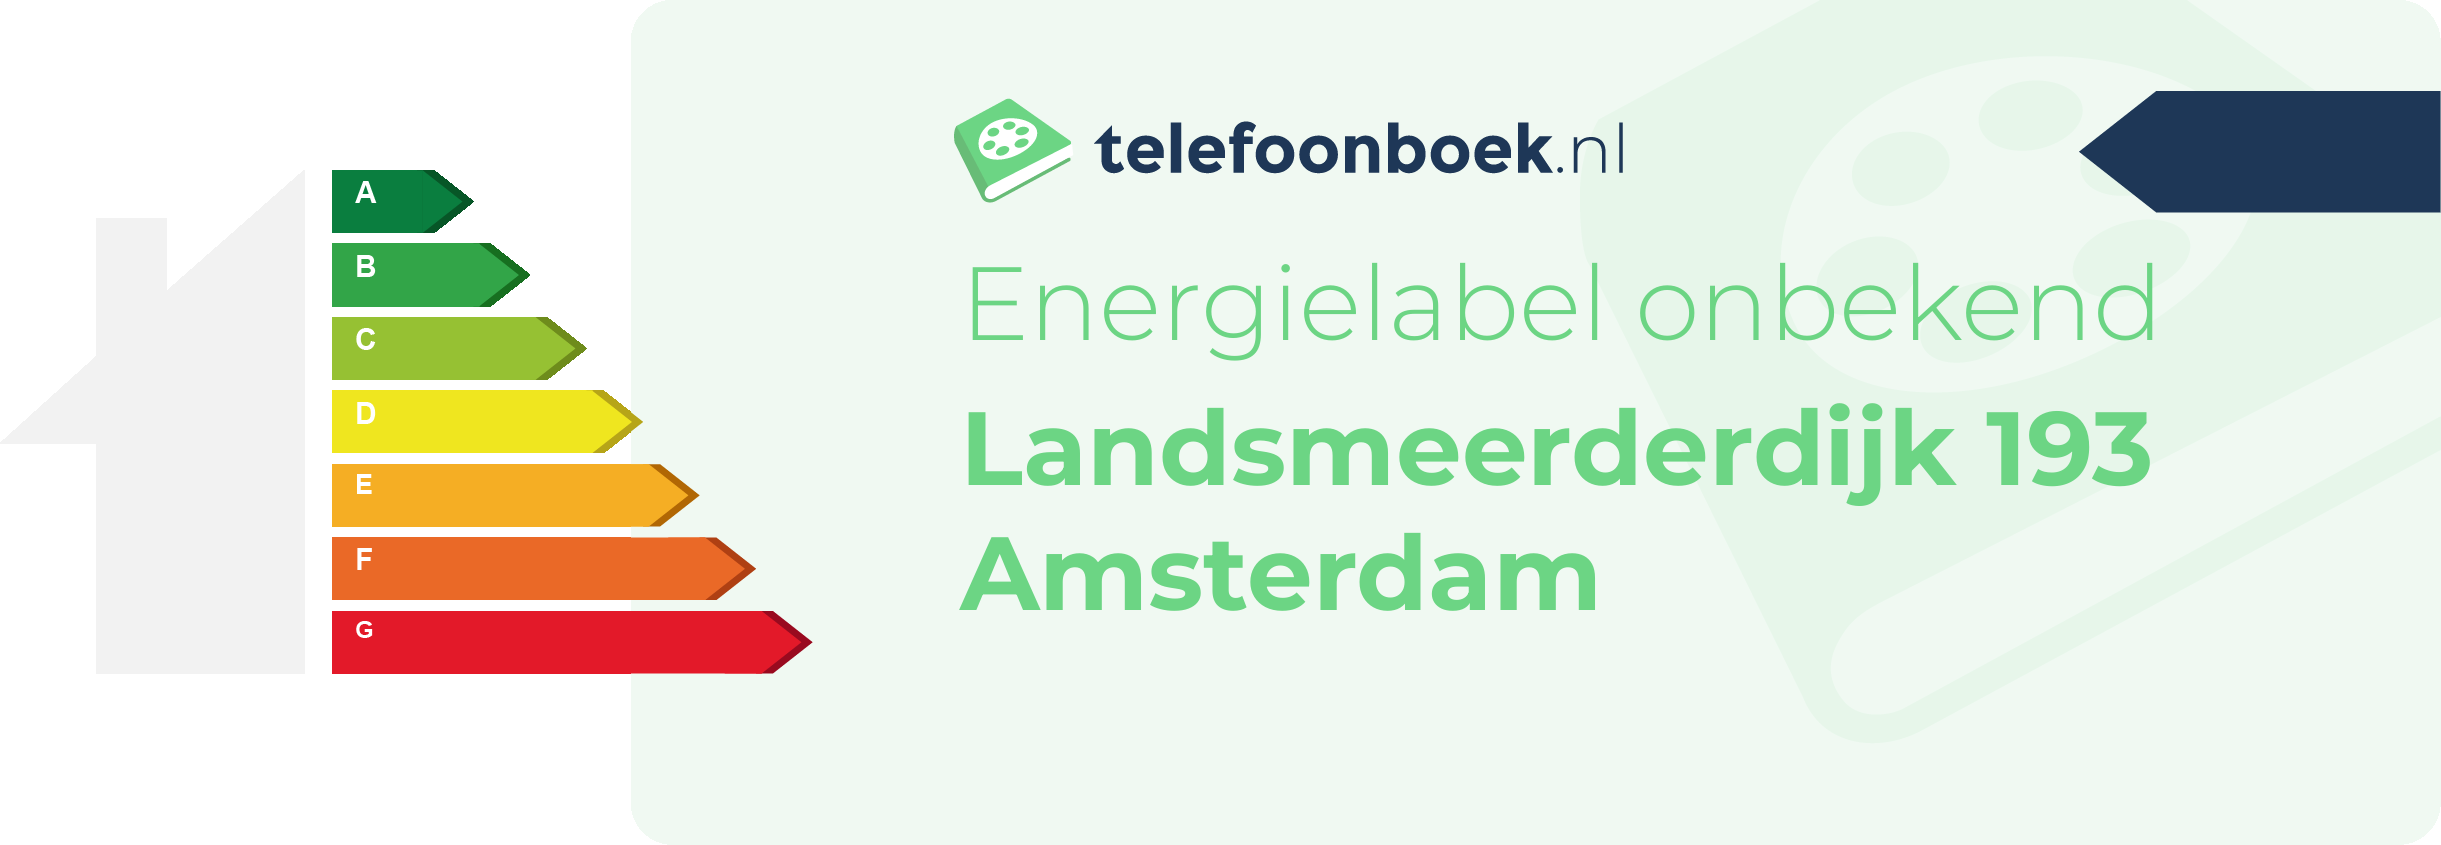 Energielabel Landsmeerderdijk 193 Amsterdam